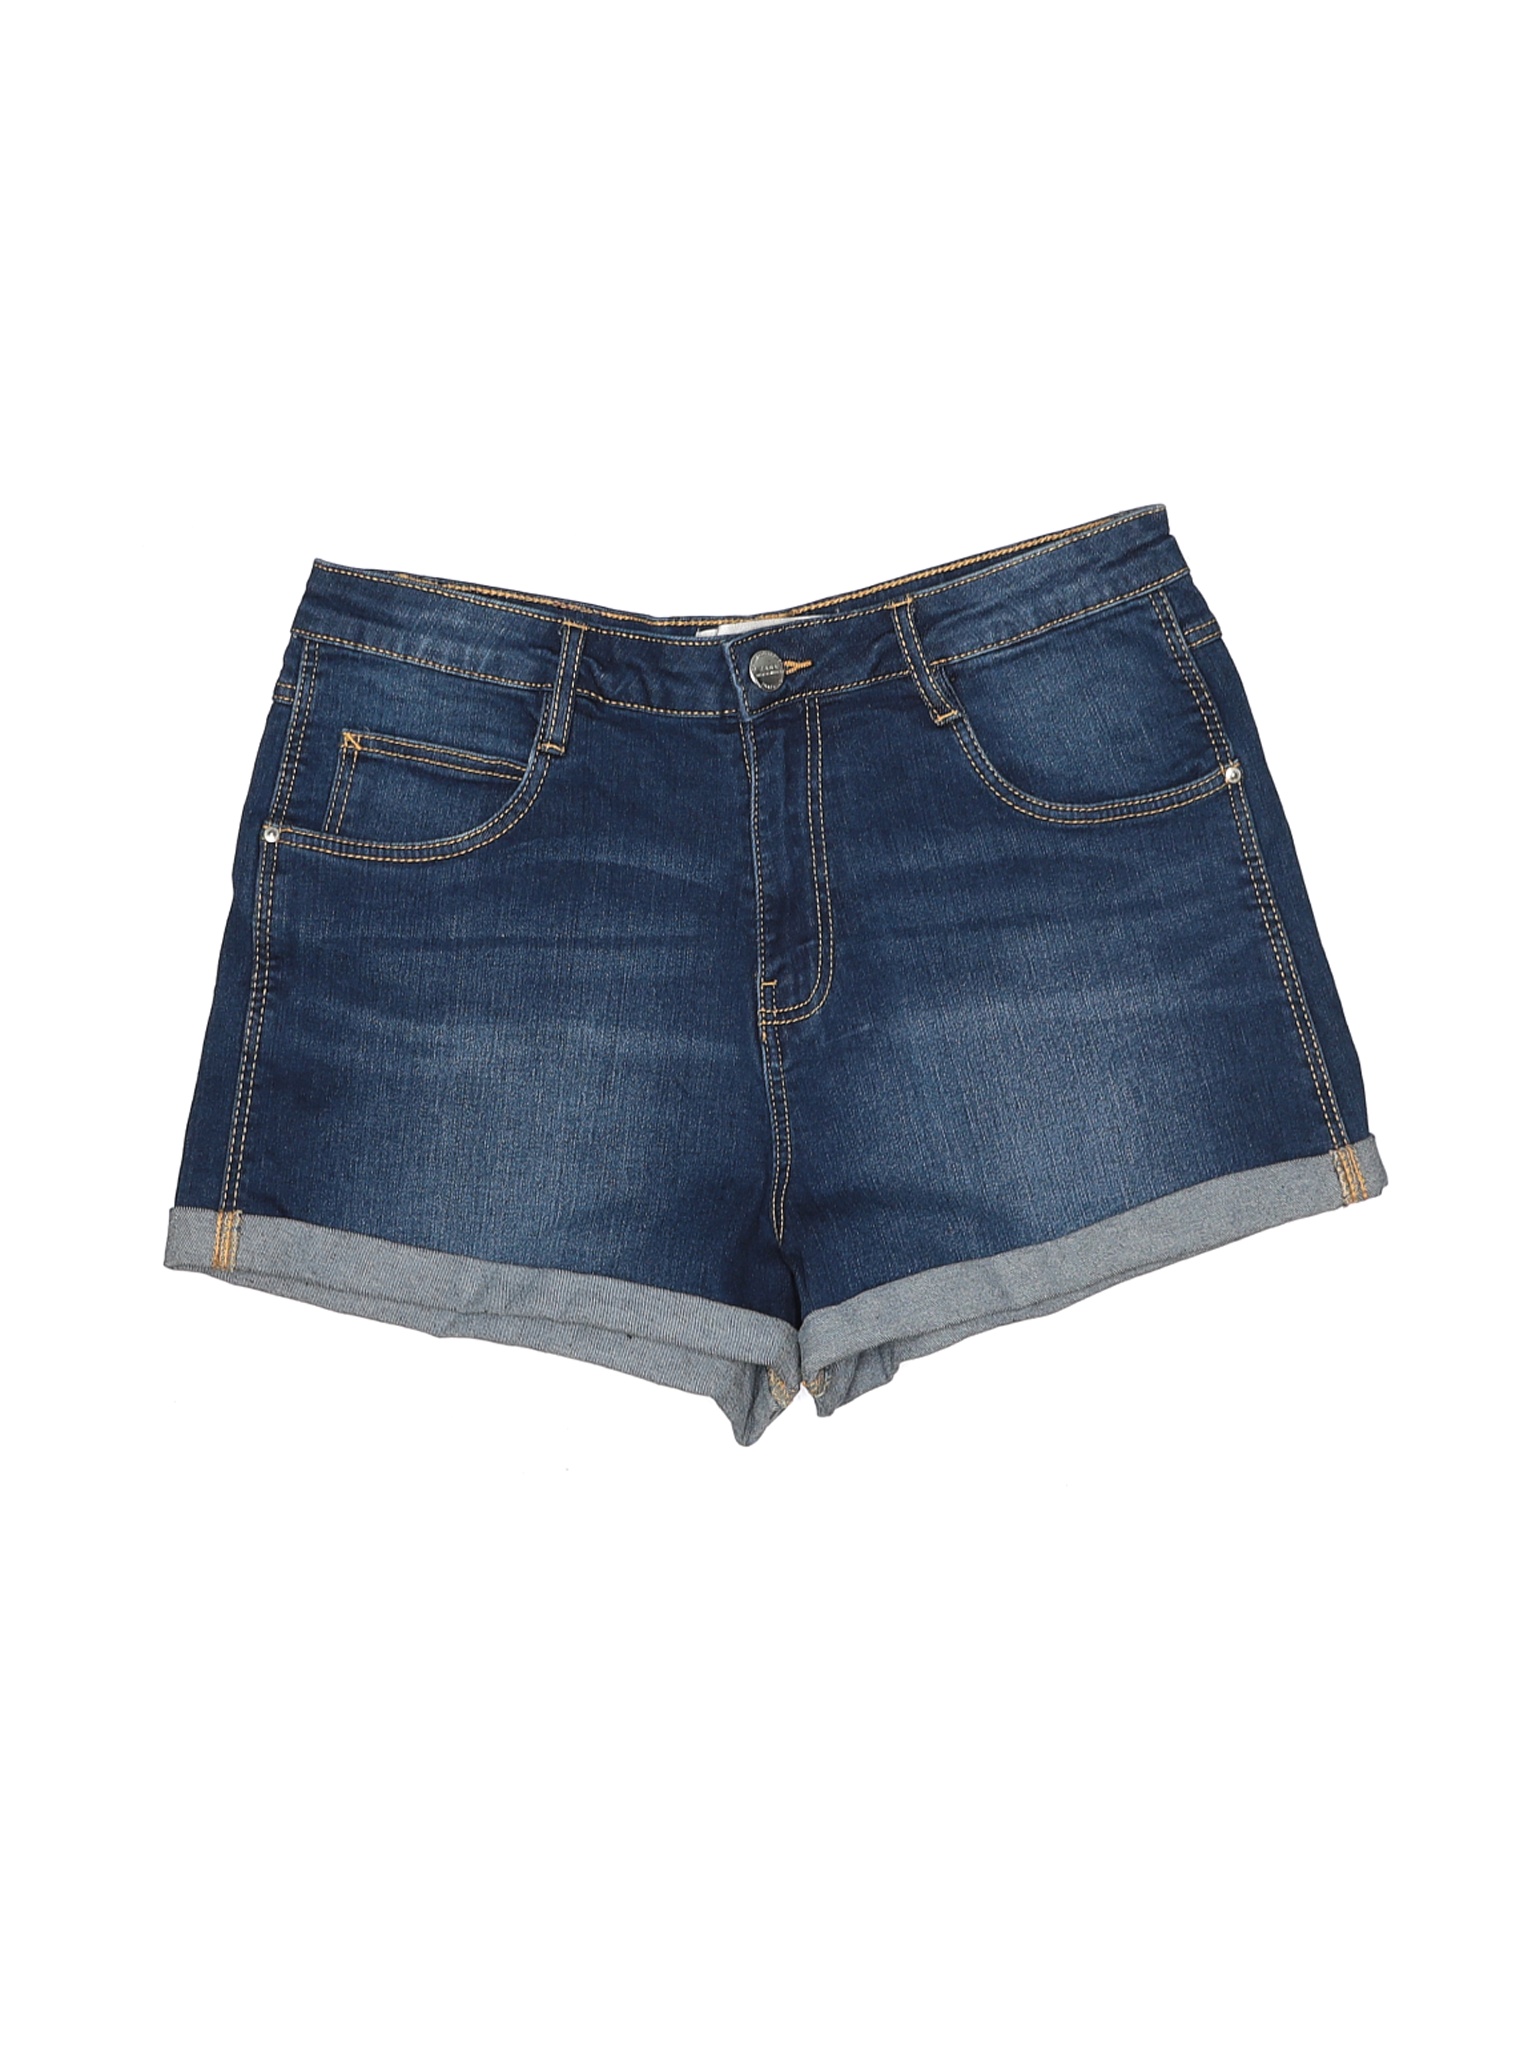 Zara TRF Women Blue Denim Shorts 6 | eBay